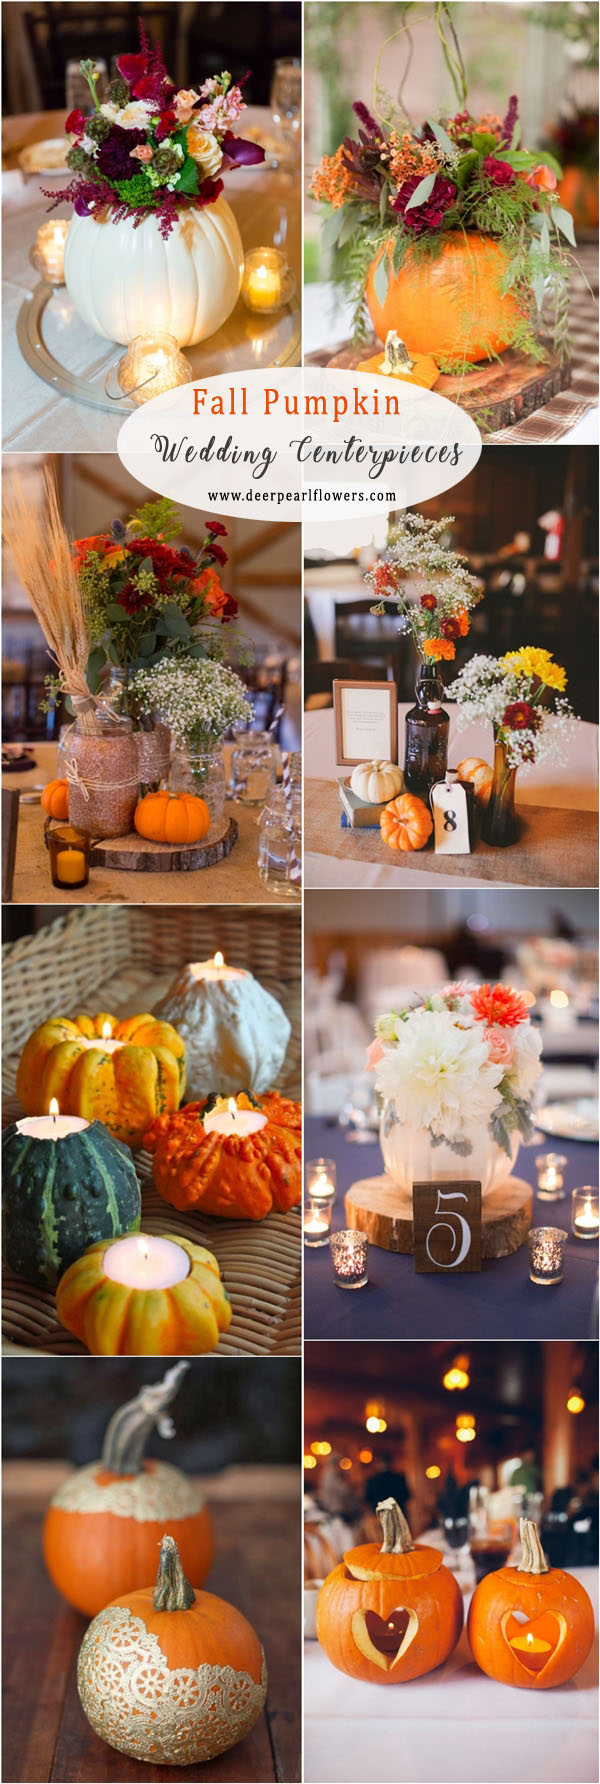 fall pumpkin wedding centerpiece ideas